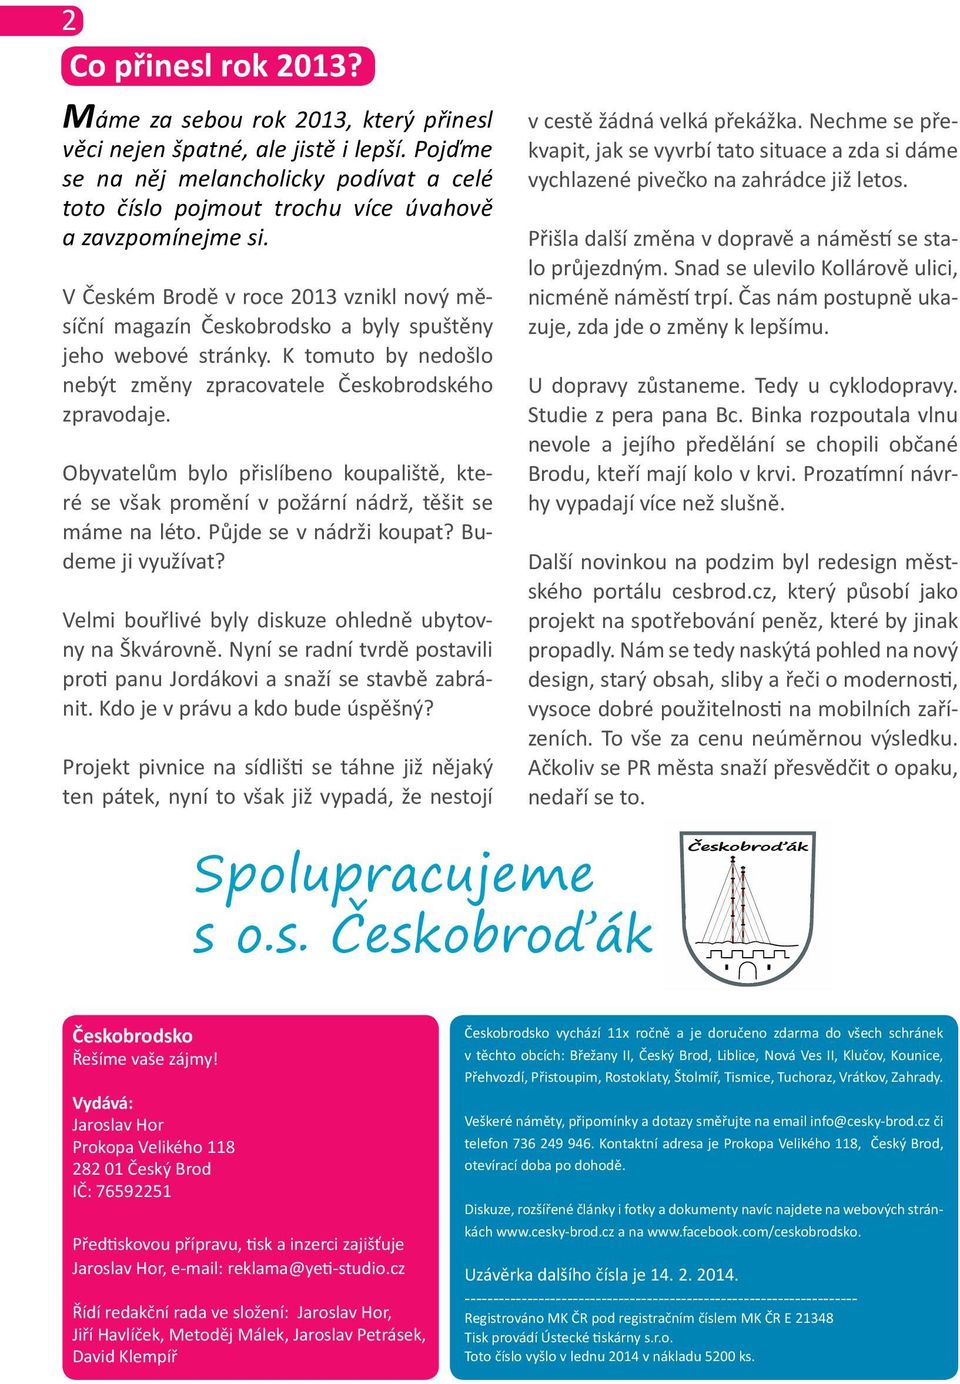 V Českém Brodě v roce 2013 vznikl nový měsíční magazín Českobrodsko a byly spuštěny jeho webové stránky. K tomuto by nedošlo nebýt změny zpracovatele Českobrodského zpravodaje.